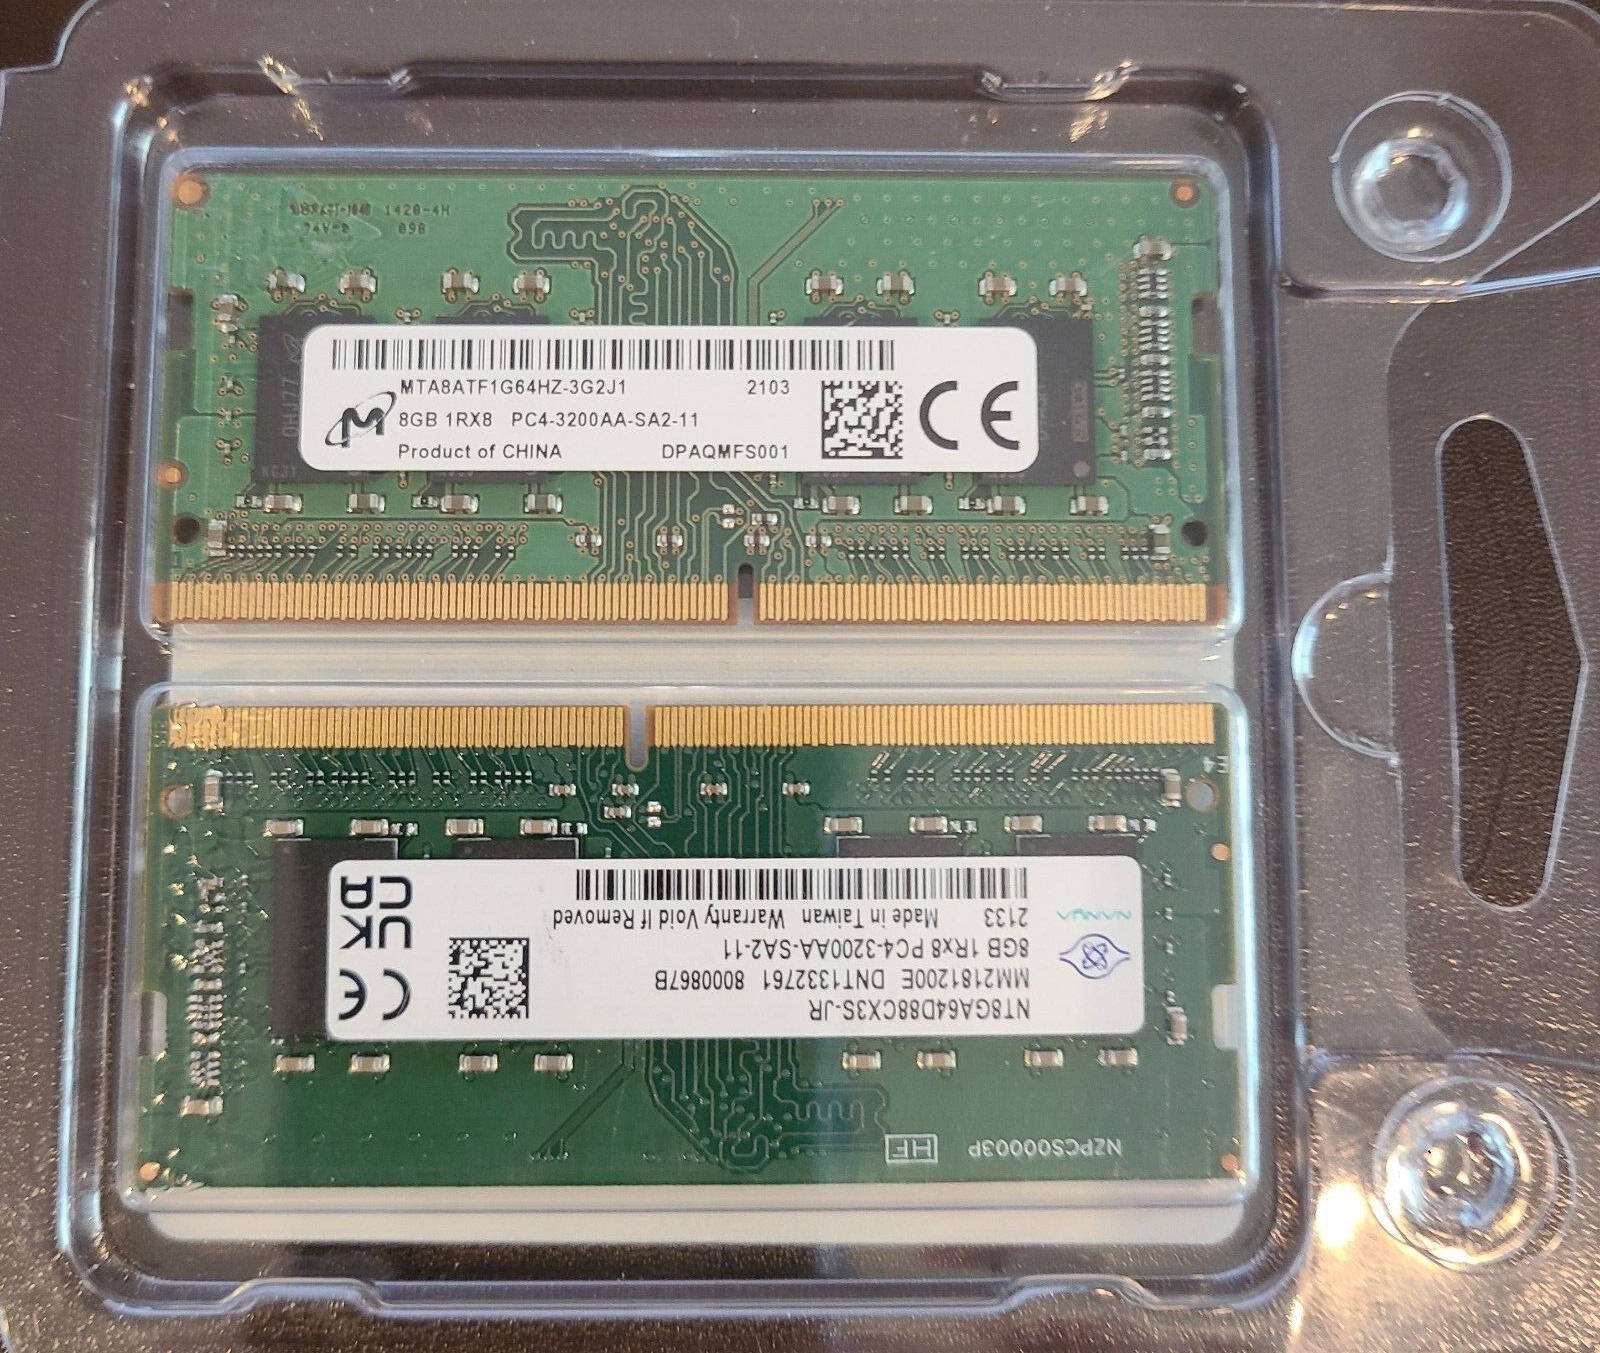 16GB (2x8GB) 1RX8 PC4-3200AA-SA2-11 laptop memory - Micron - Nanya